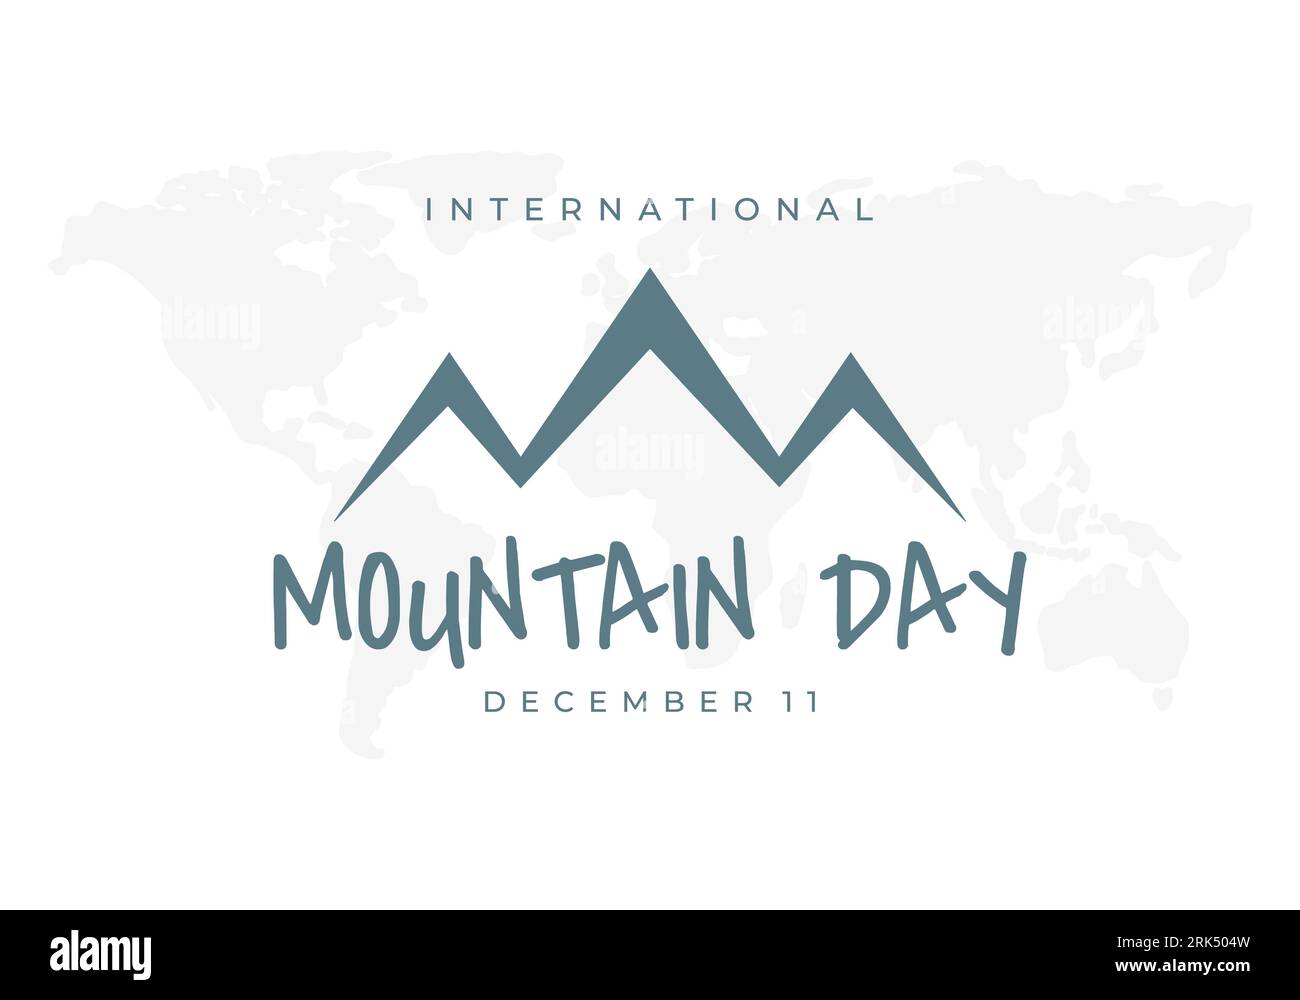 Internationaler Bergtagshintergrund wird am 11. dezember gefeiert. Stock Vektor